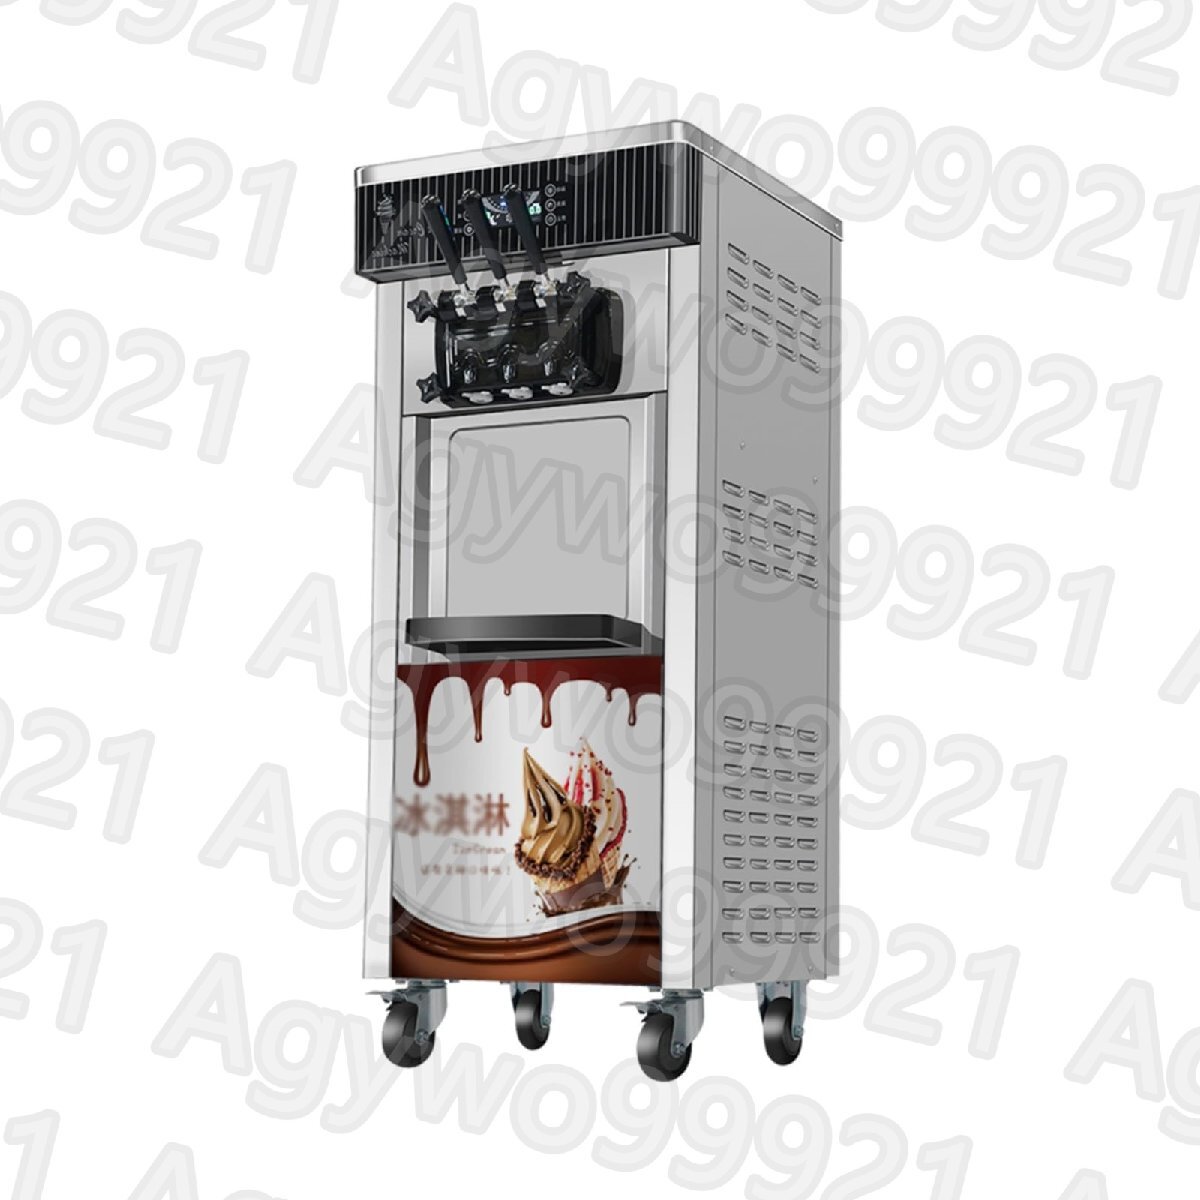 アイスクリームマシン 業務用クーラー モバイルトリコロールフレーバー スイートコーン 冷凍装置 自動販売機 アイスクリーム製造機_画像1